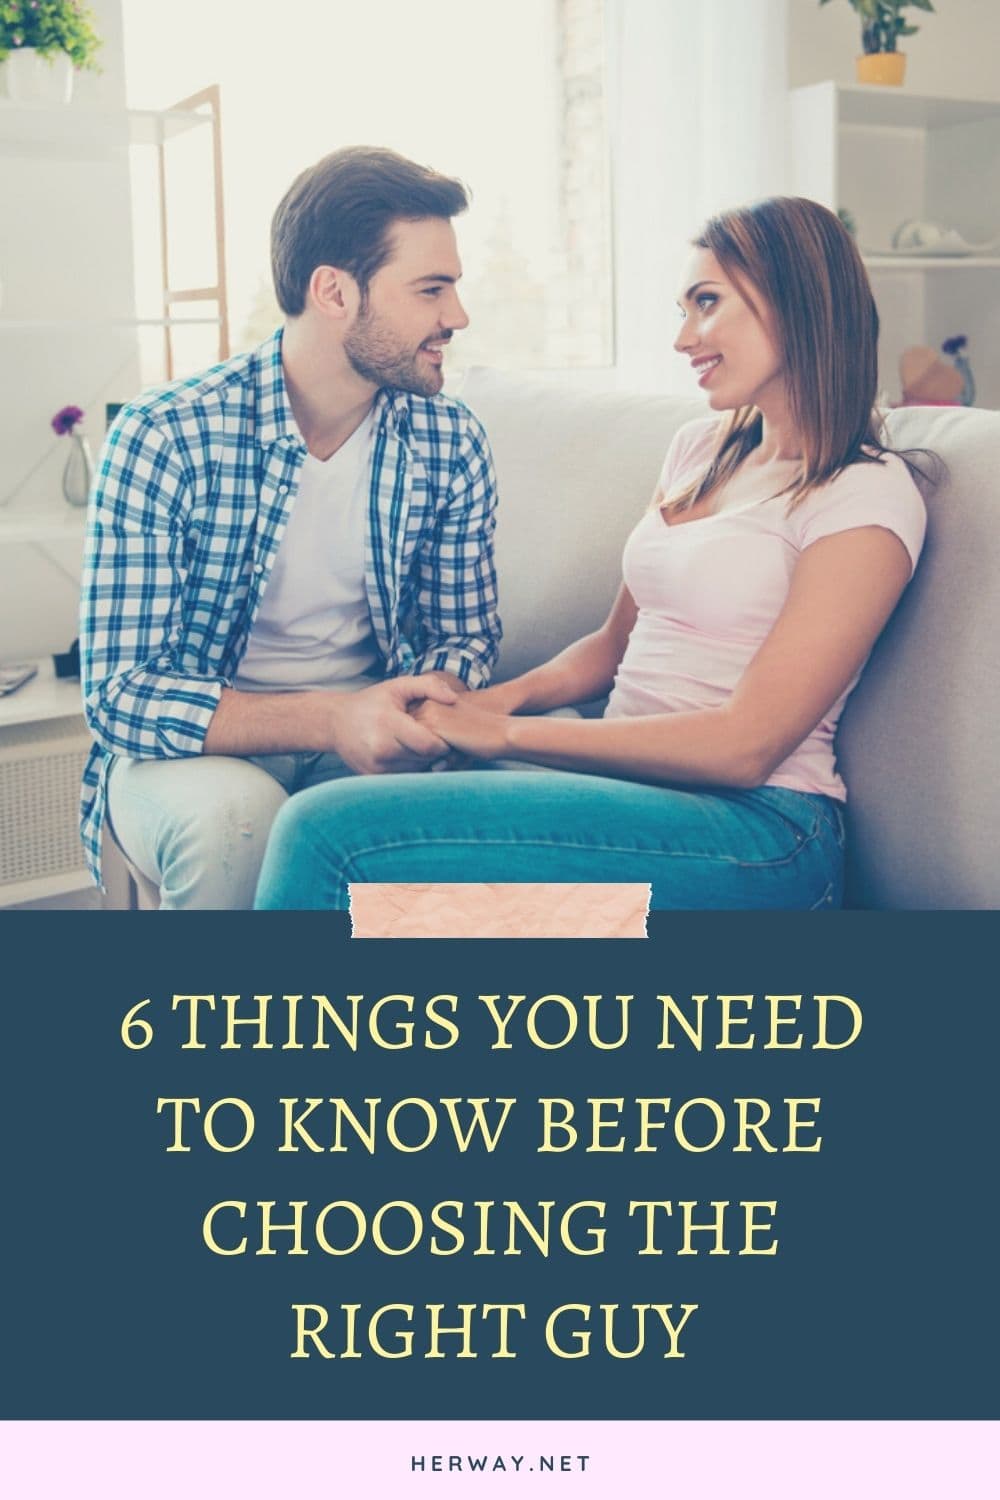 6 cose da sapere prima di scegliere l'uomo giusto